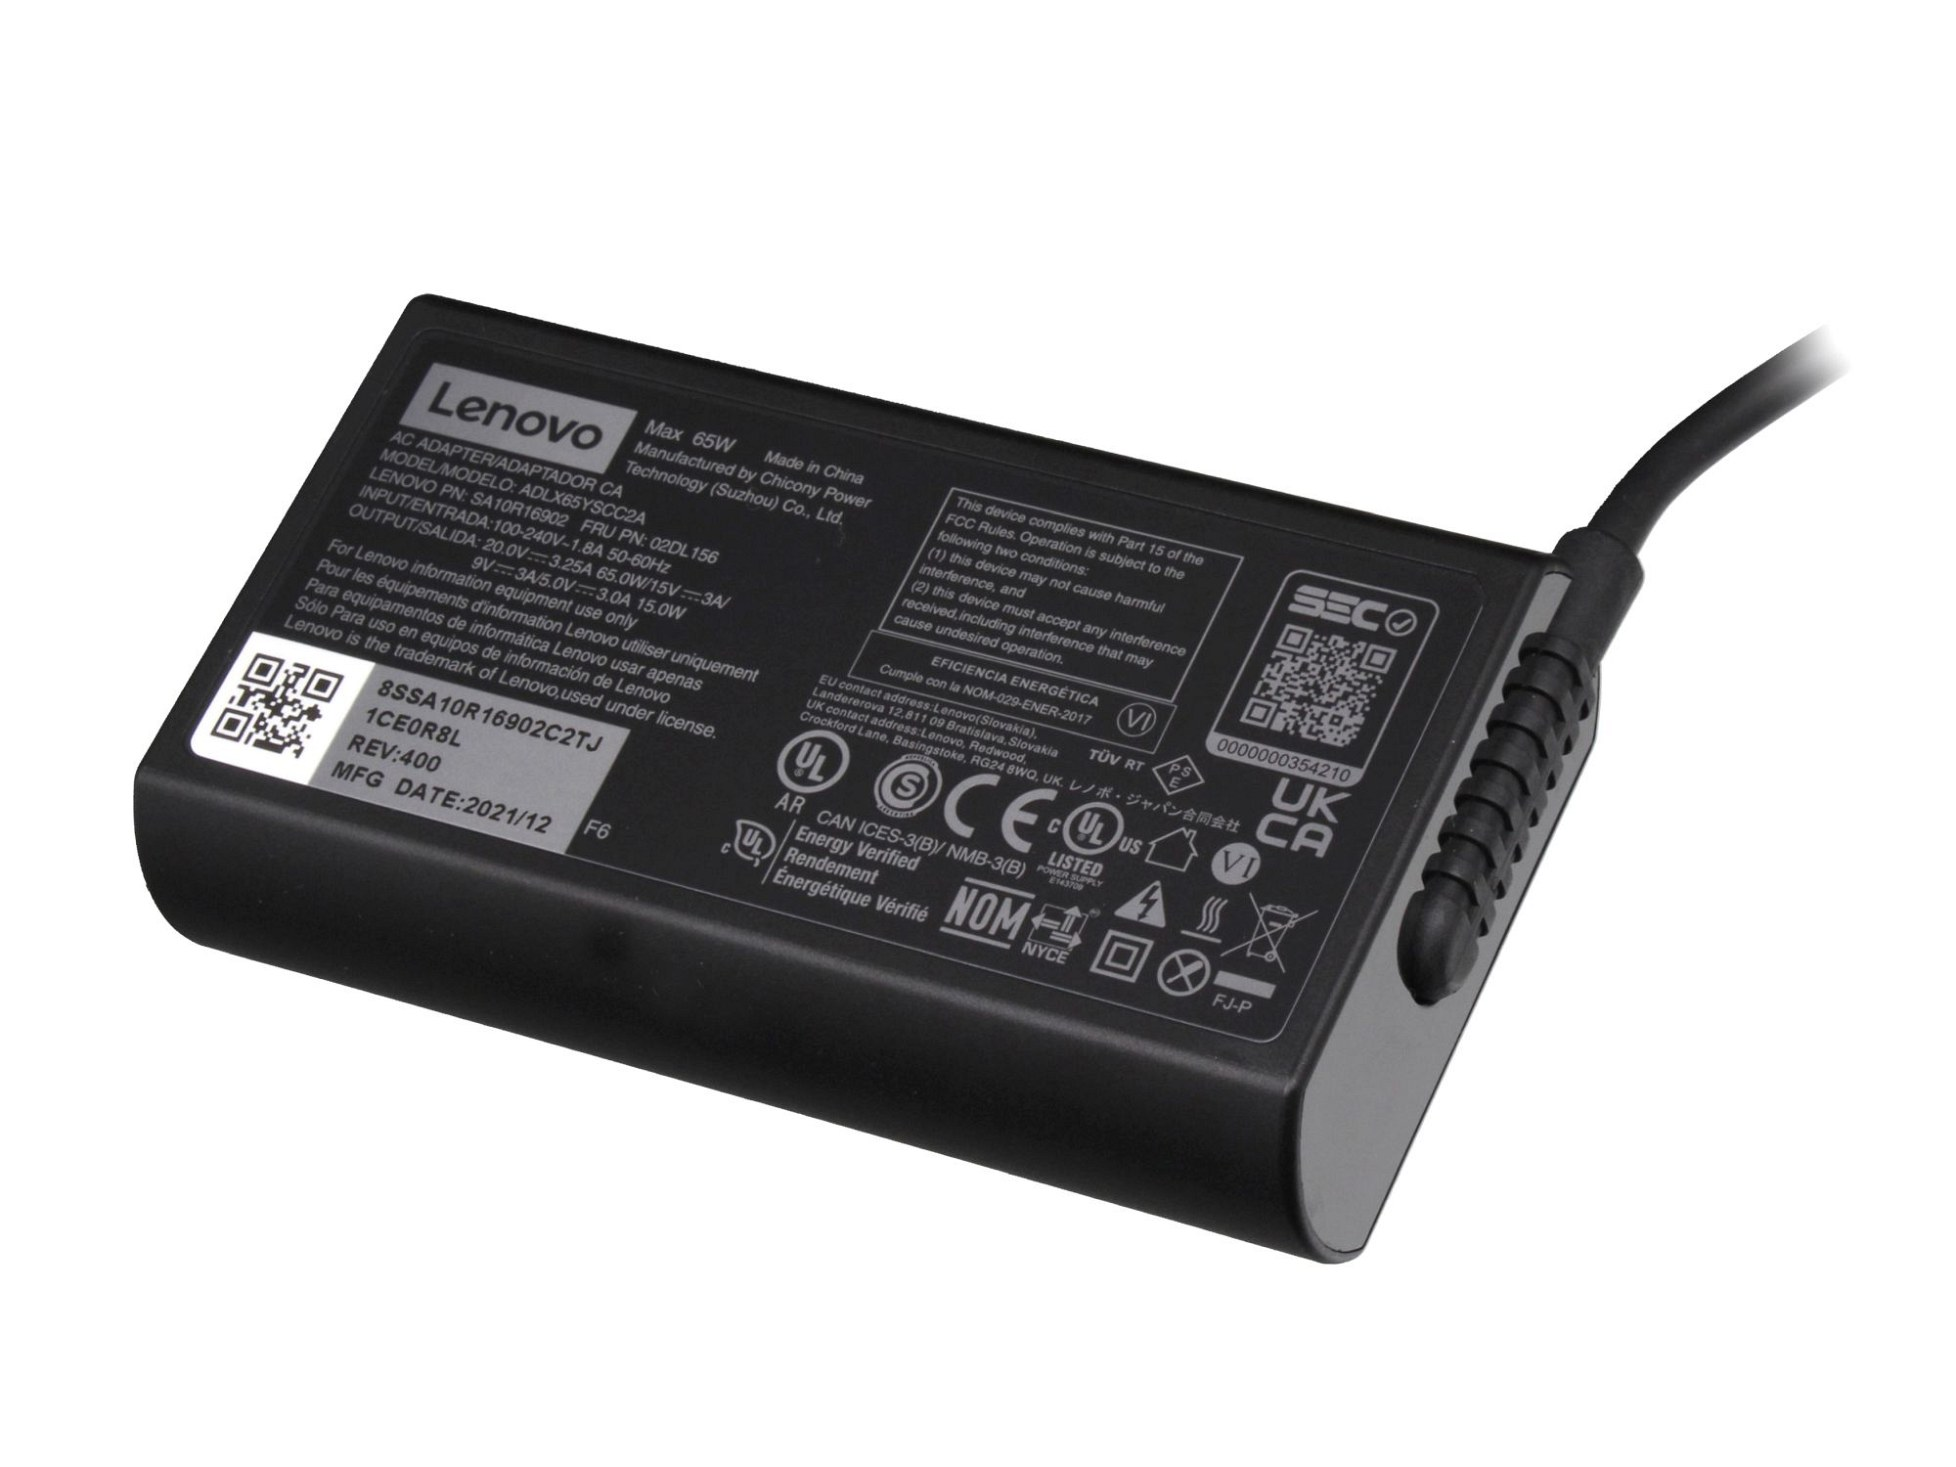 LENOVO 5A11J62100 abgerundetes 65 Netzteil Watt USB-C Original